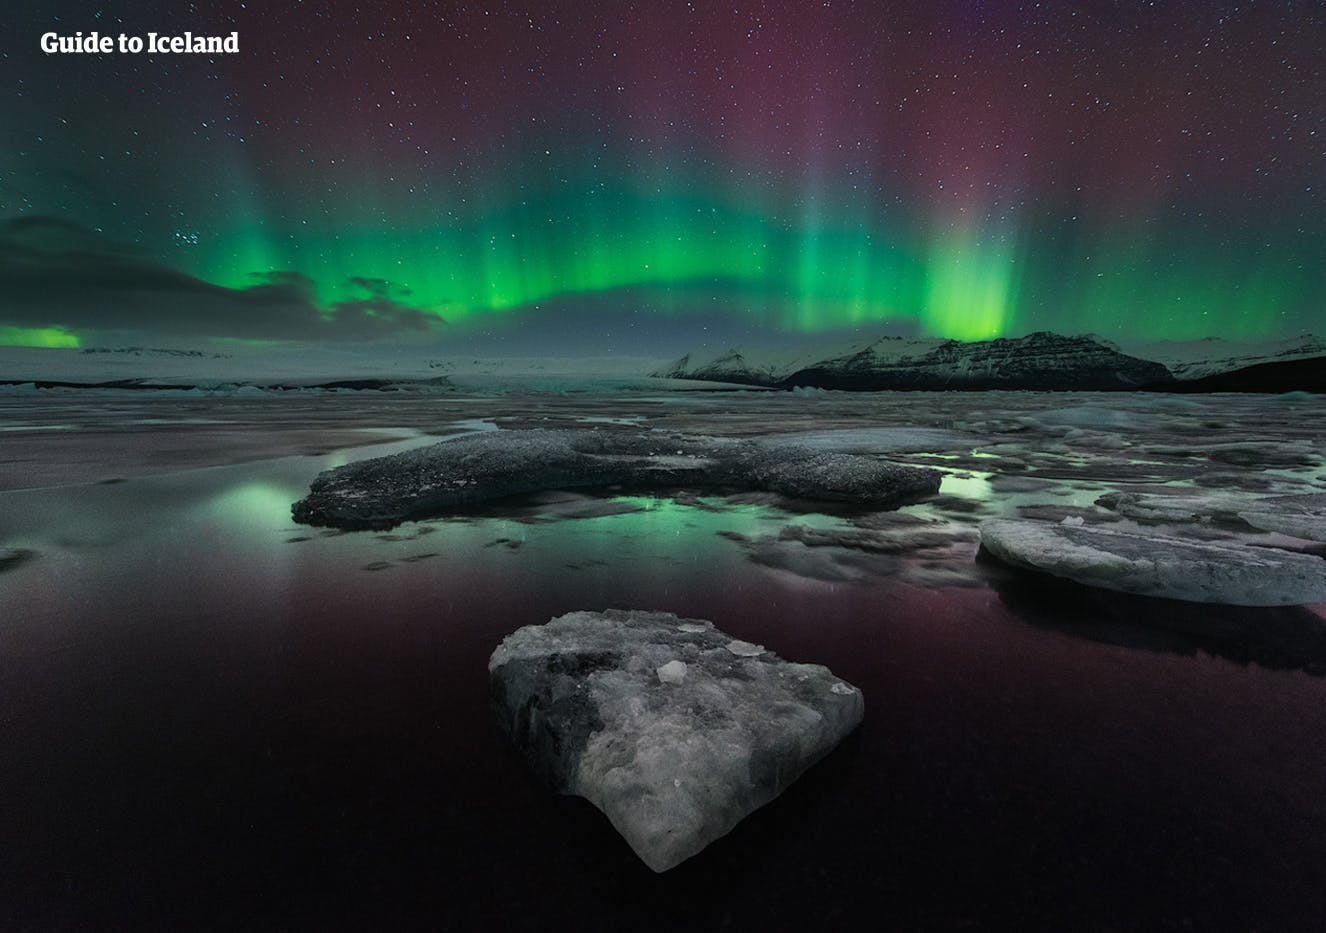 绿色、粉色与紫色交织的北极光在杰古沙龙冰河湖上方舞动